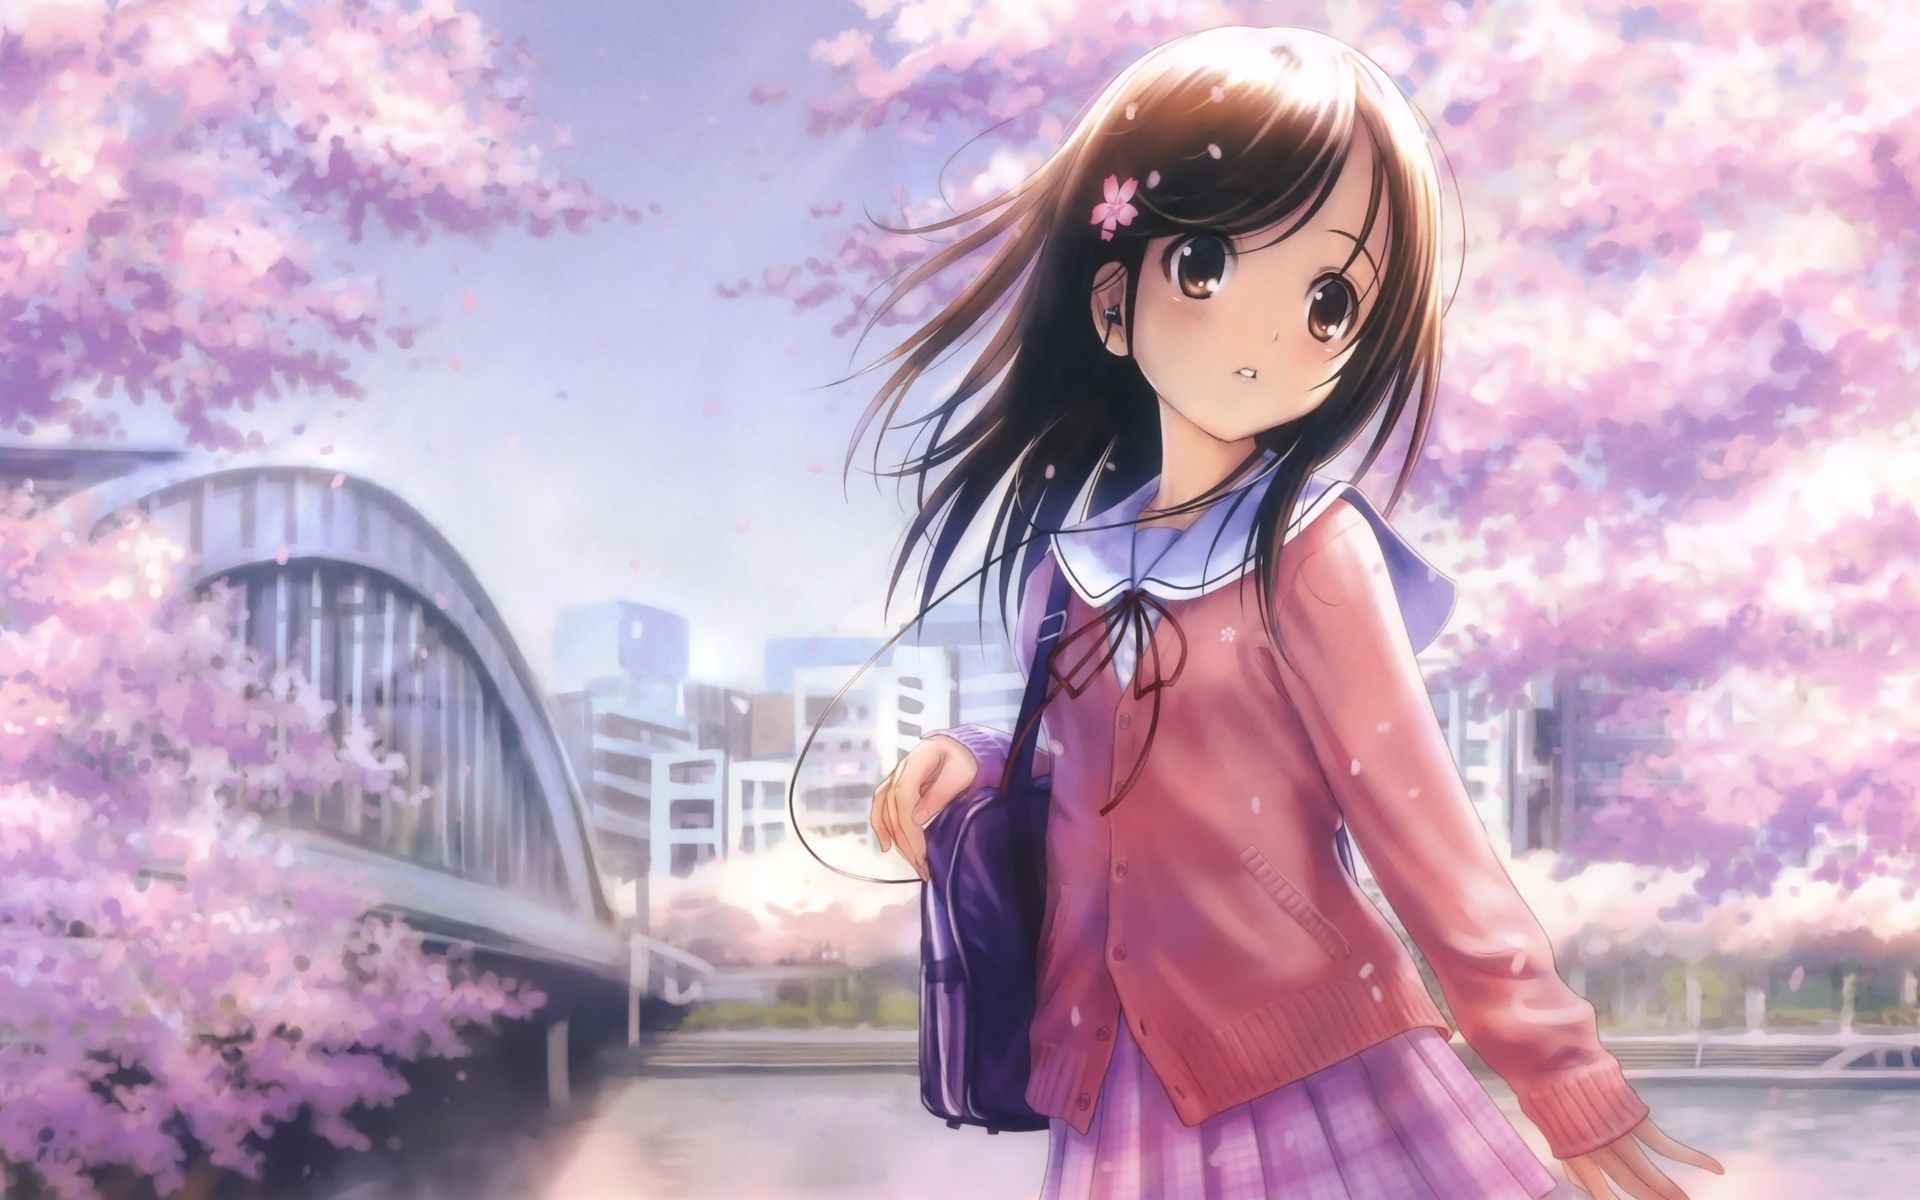 Anime Girl Wallpaper Hd Free Download gambar ke 3